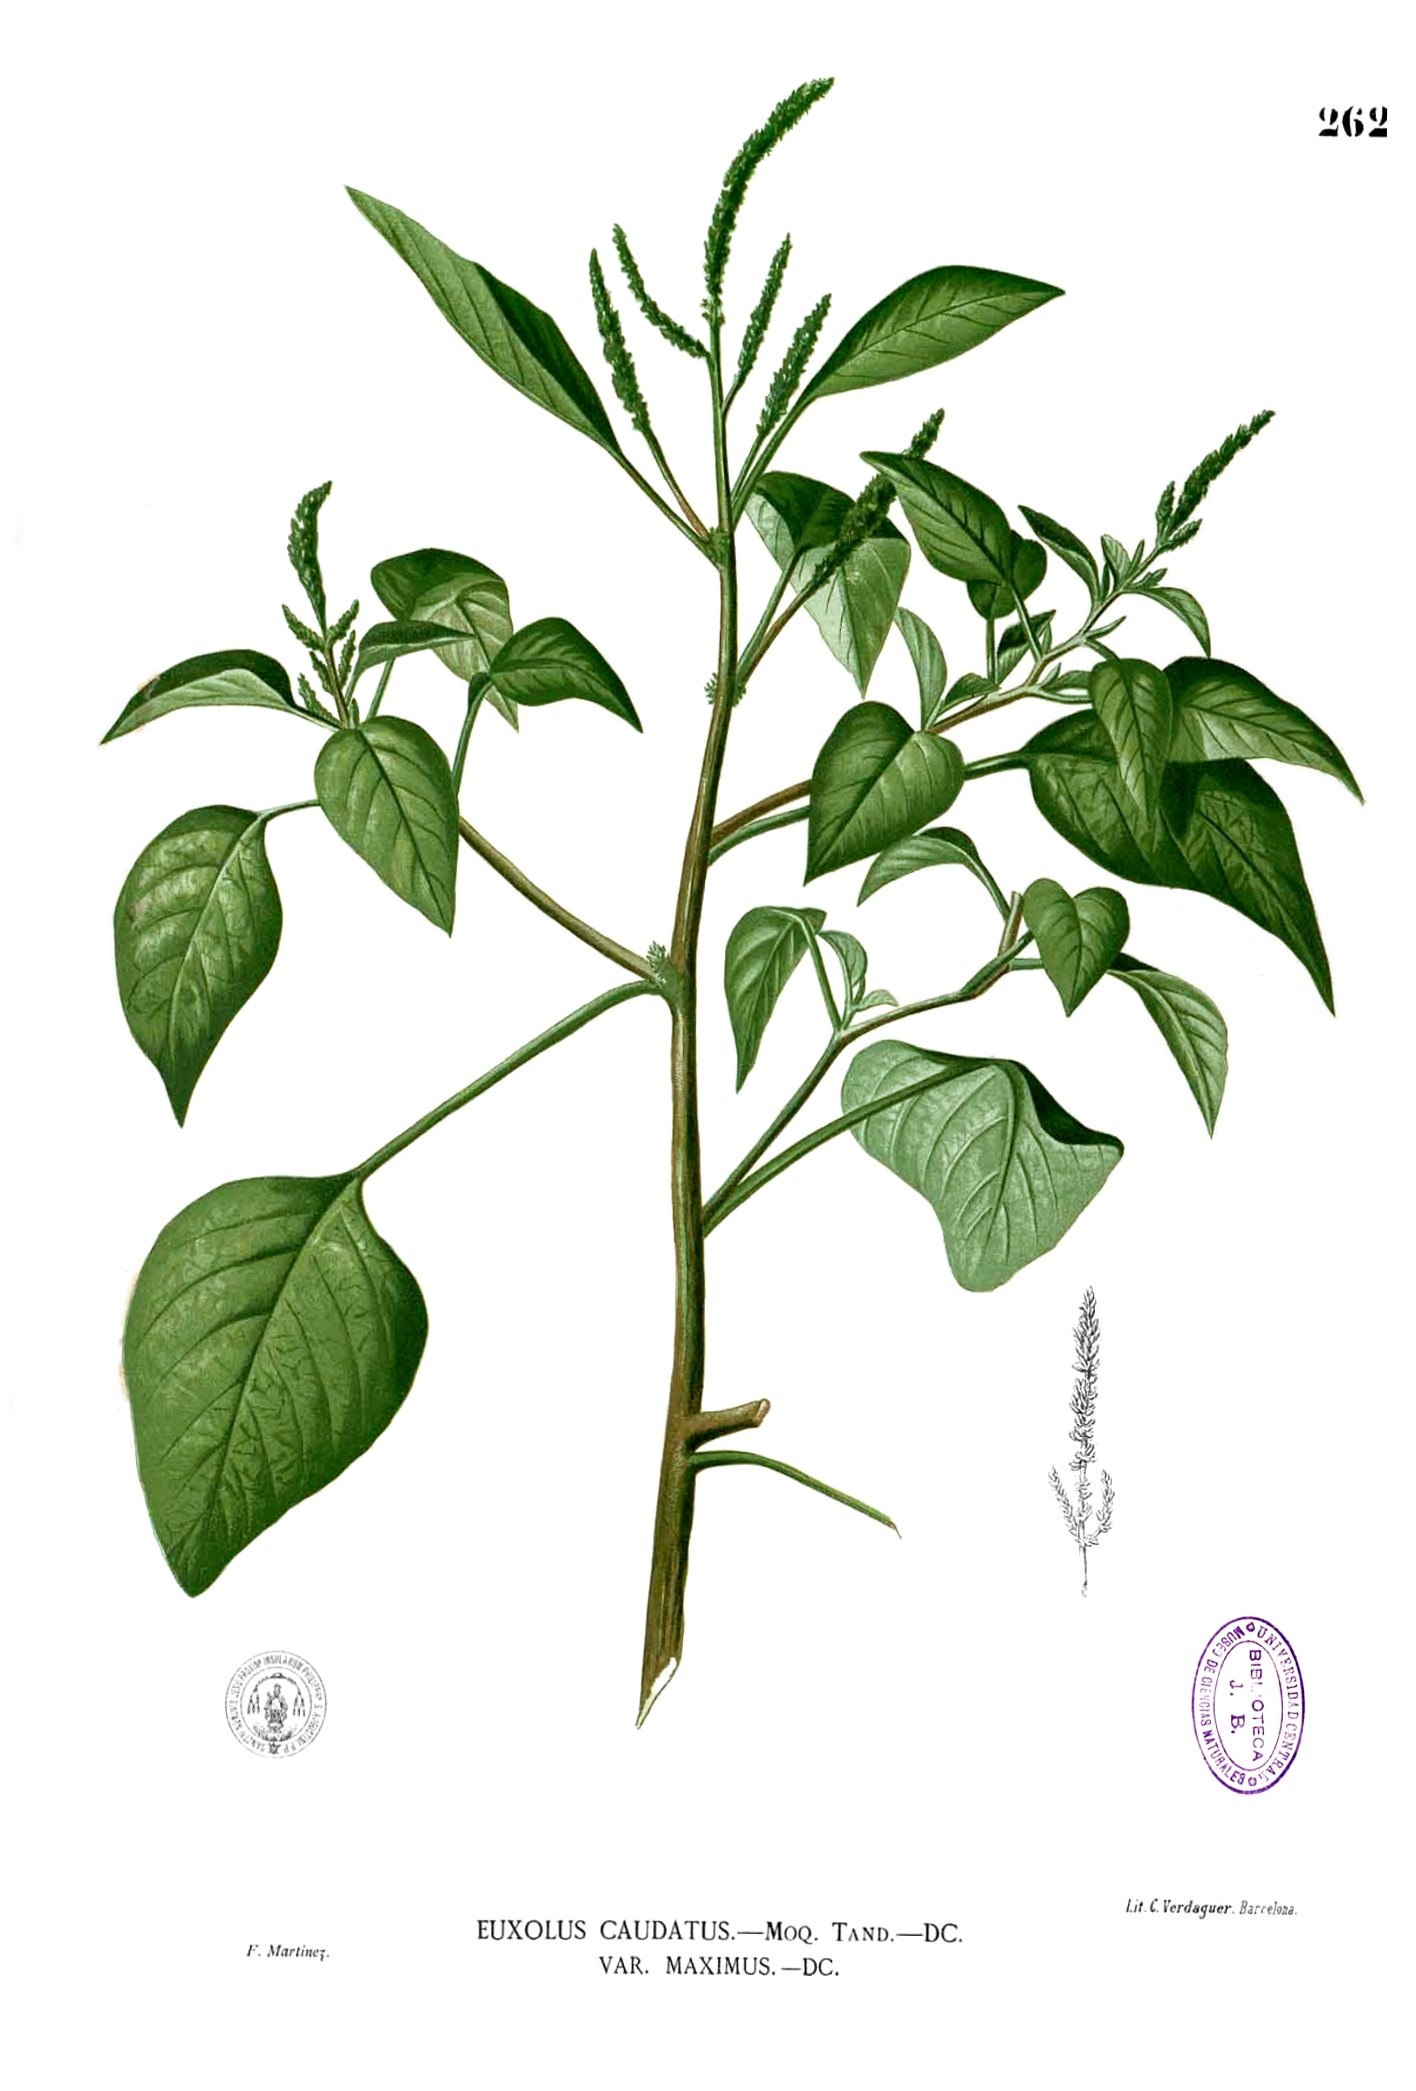 Amaranthus viridis Blanco2.262